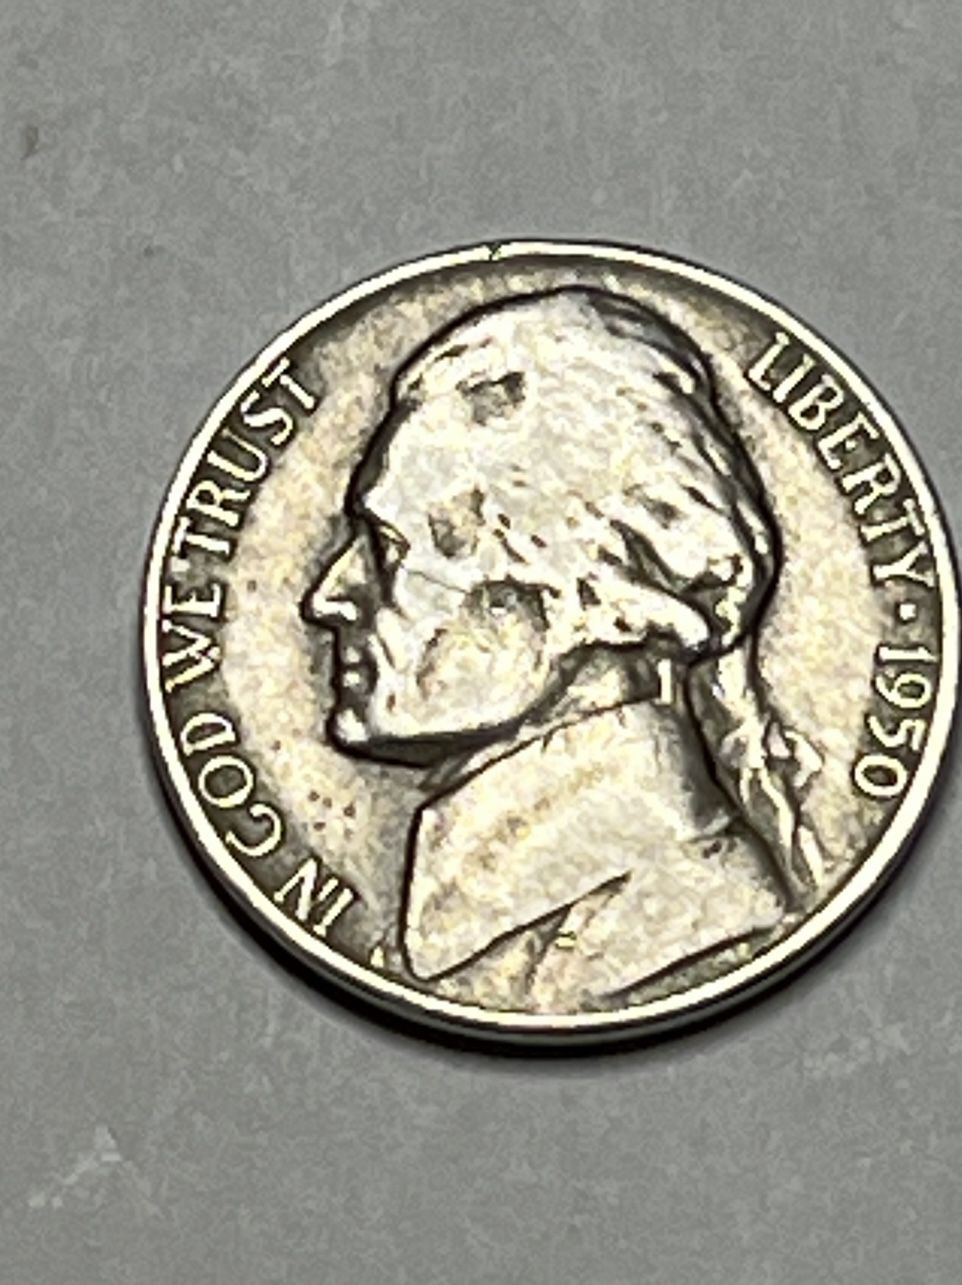 Nickel 1950